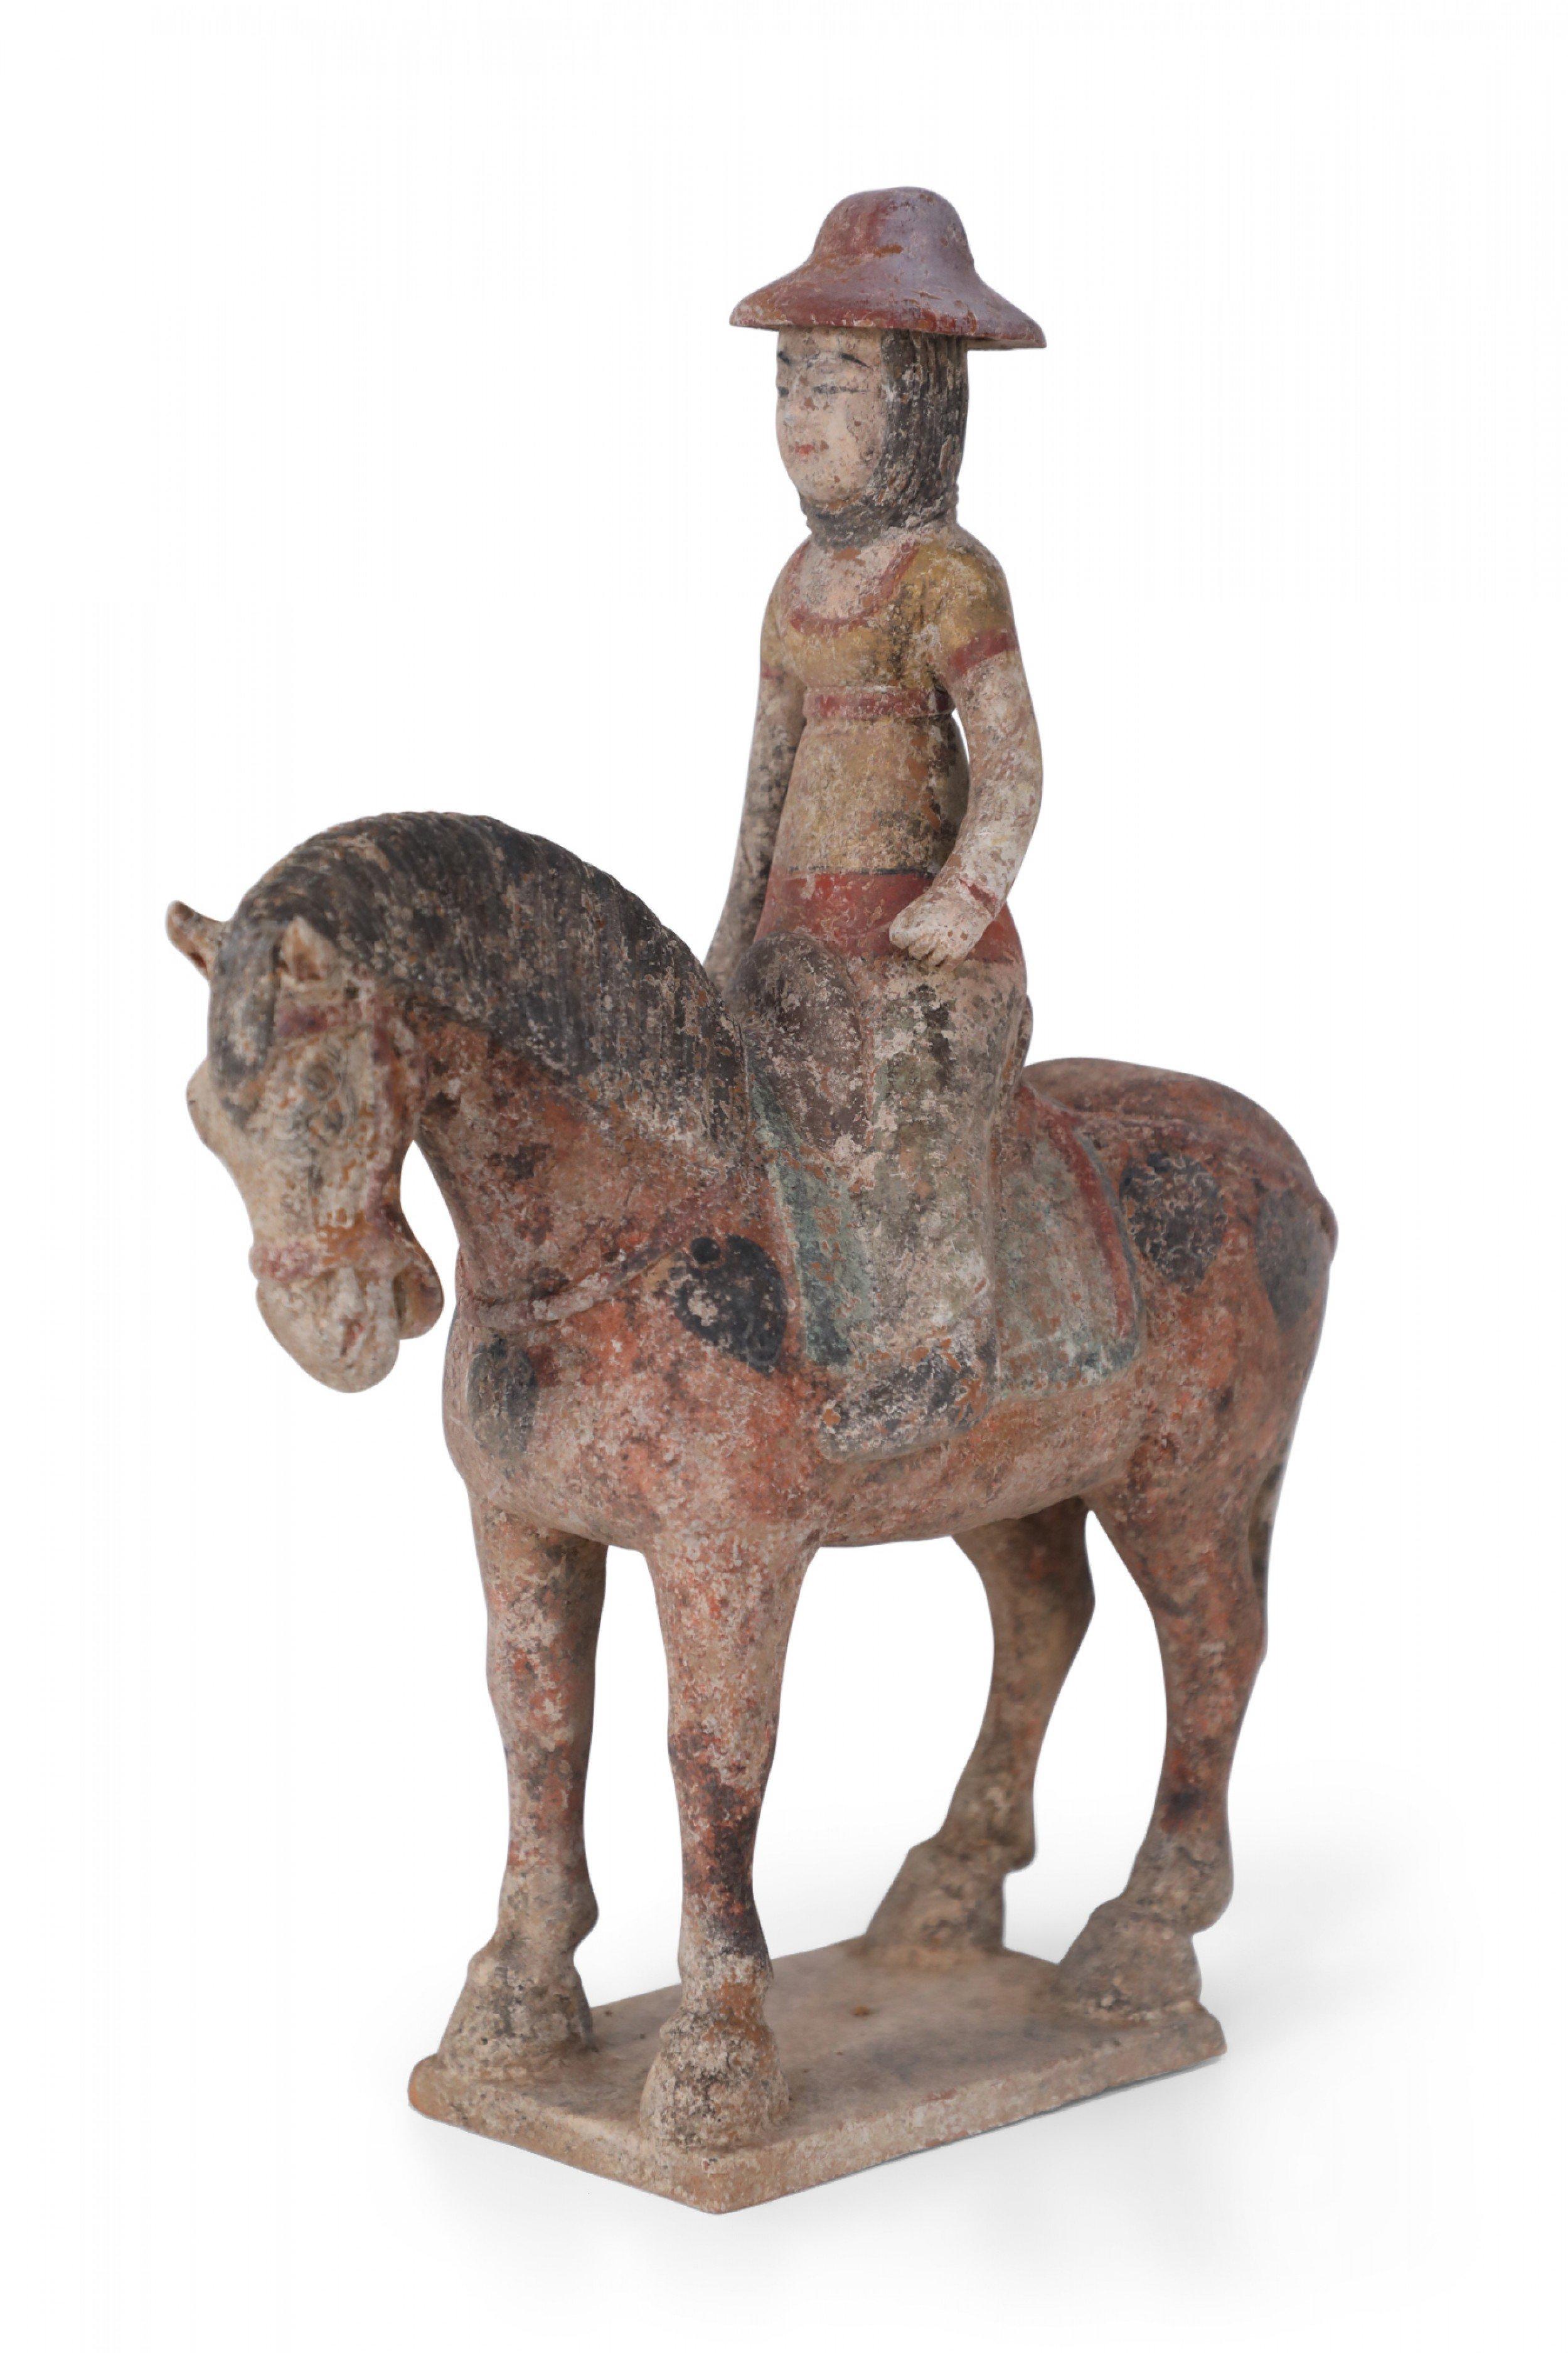 Ancienne figurine funéraire chinoise en terre cuite de style dynastie Tang représentant une fille portant un chapeau rouge et chevauchant un cheval marron, reposant sur une base texturée.
 